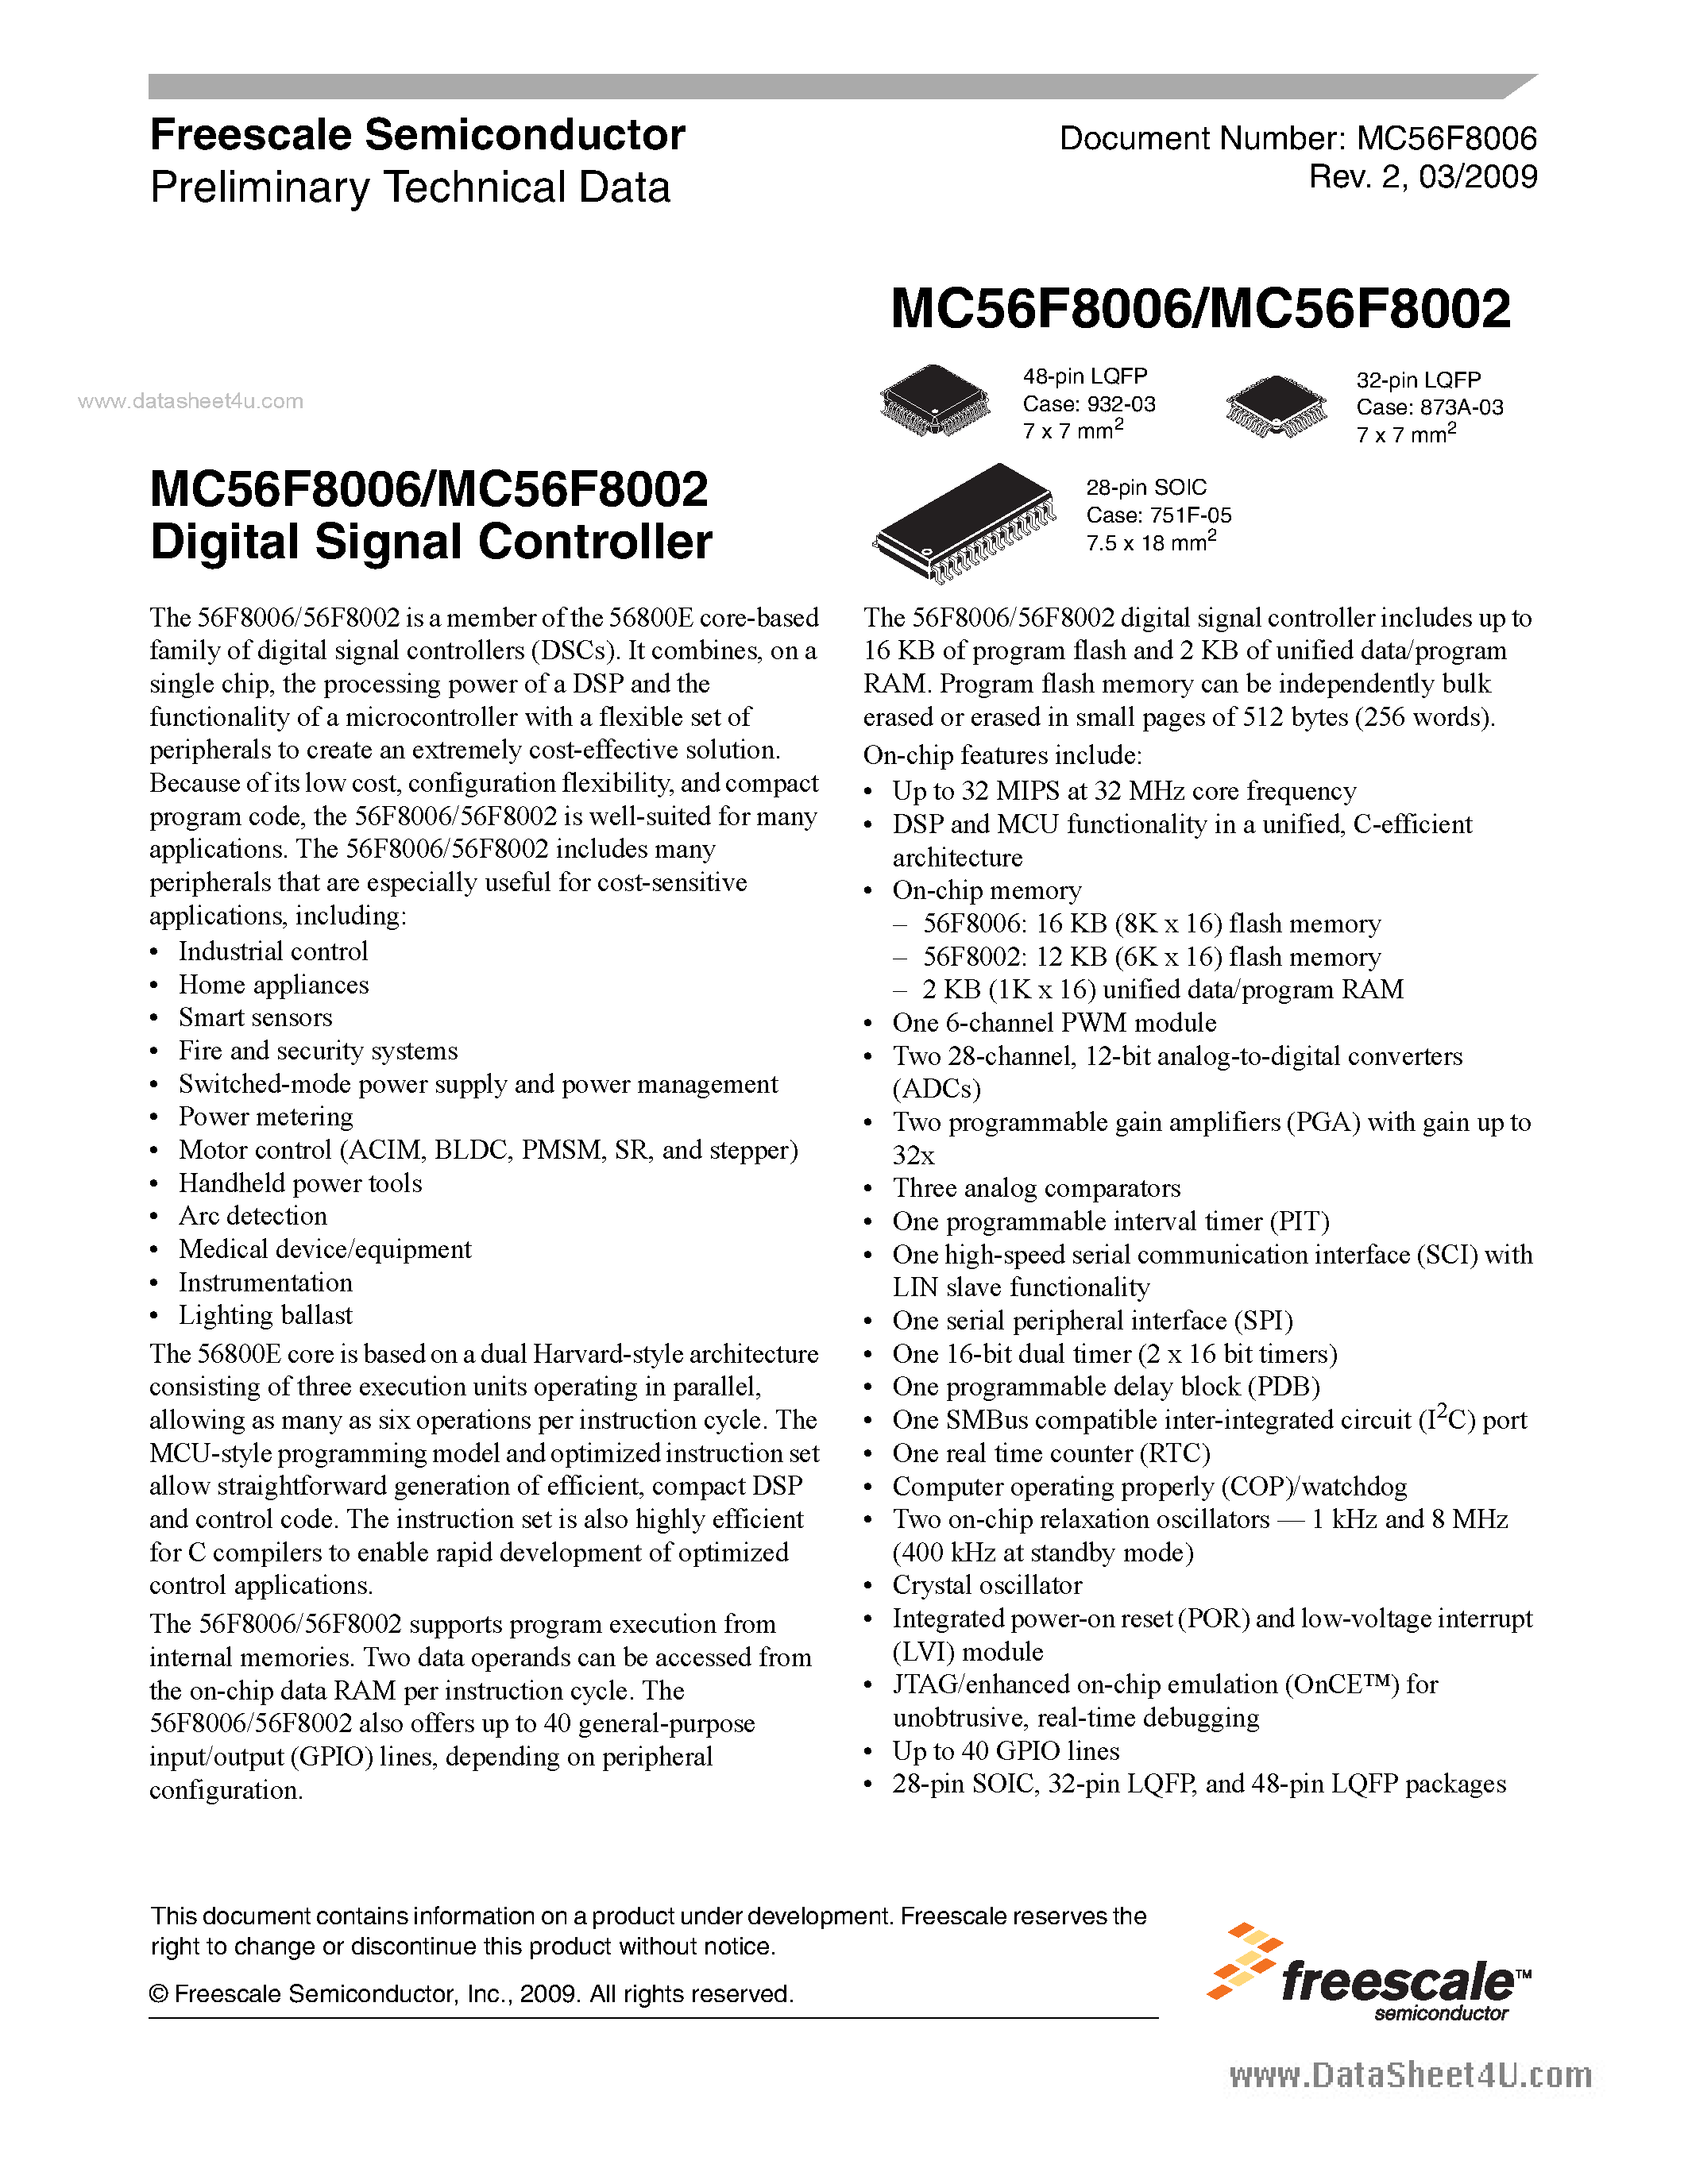 Даташит MC56F8002 - (MC56F8002 / MC56F8006) Digital Signal Controller страница 1